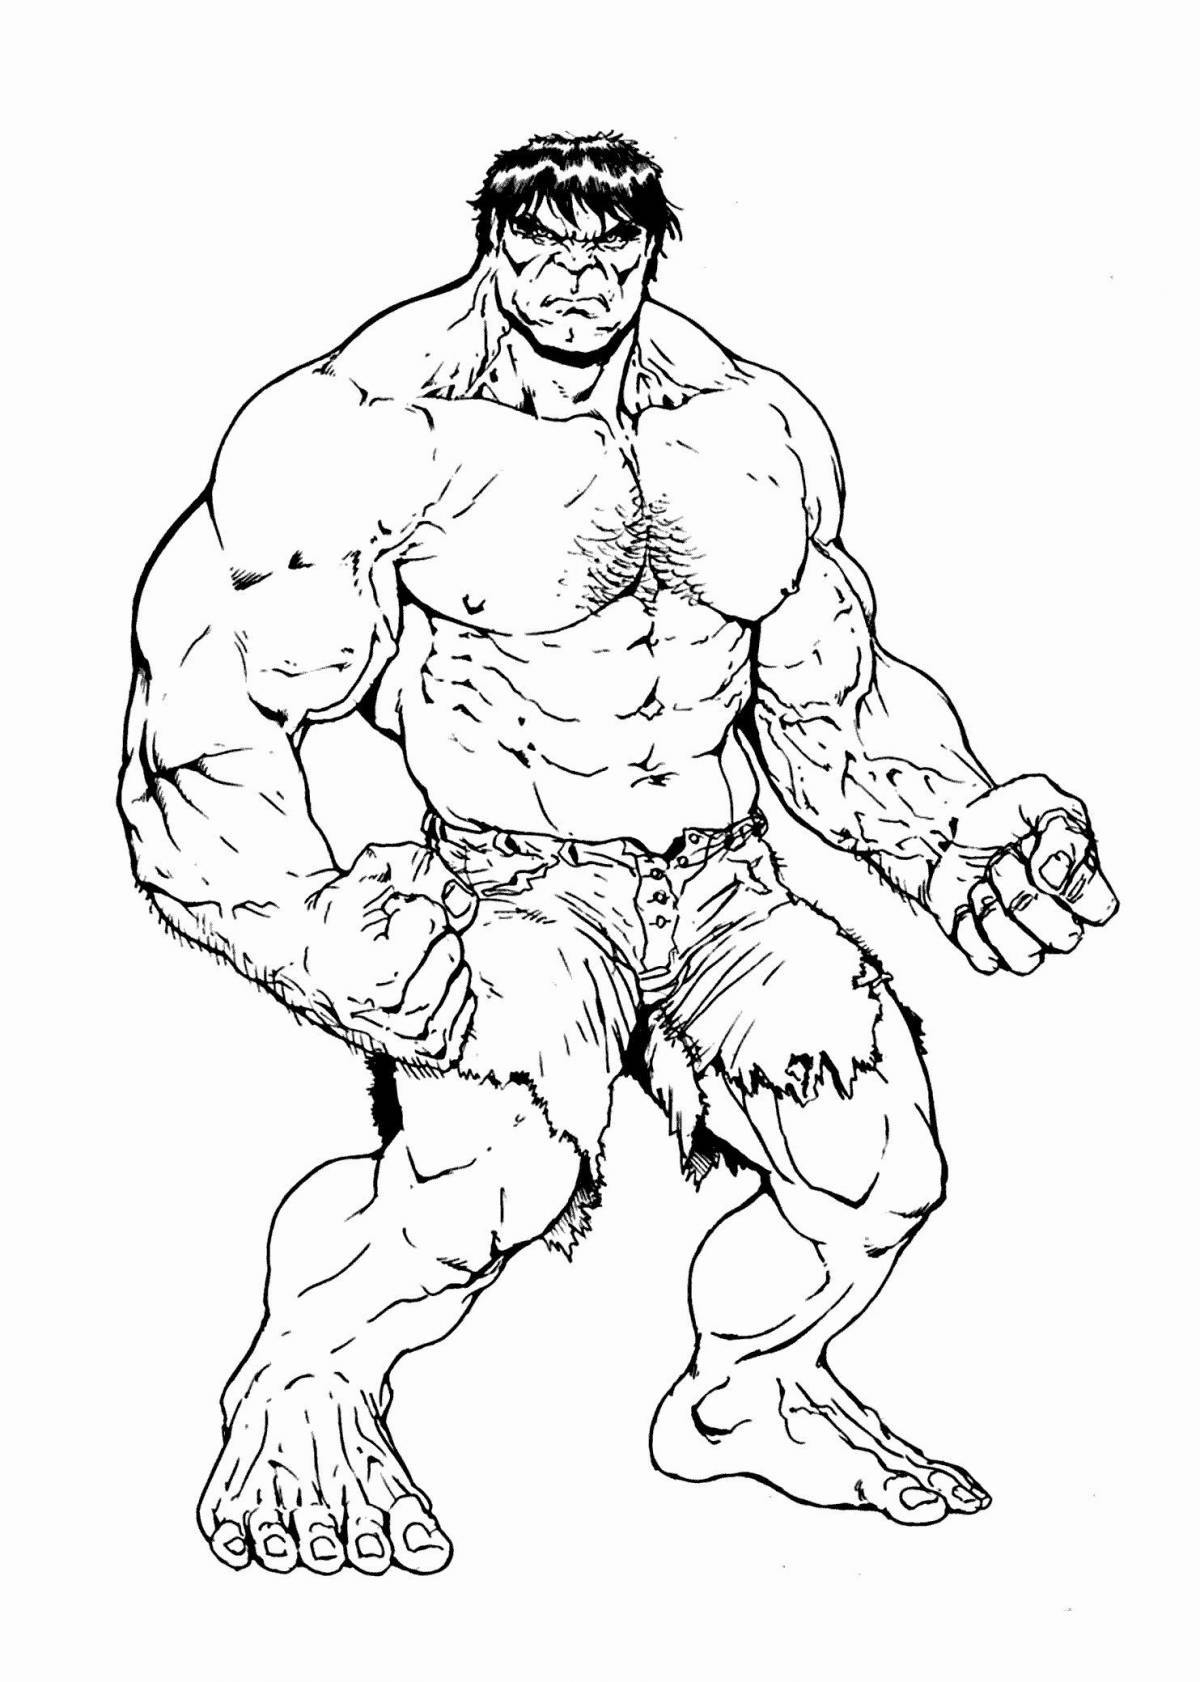 Hulk coloring book for kids